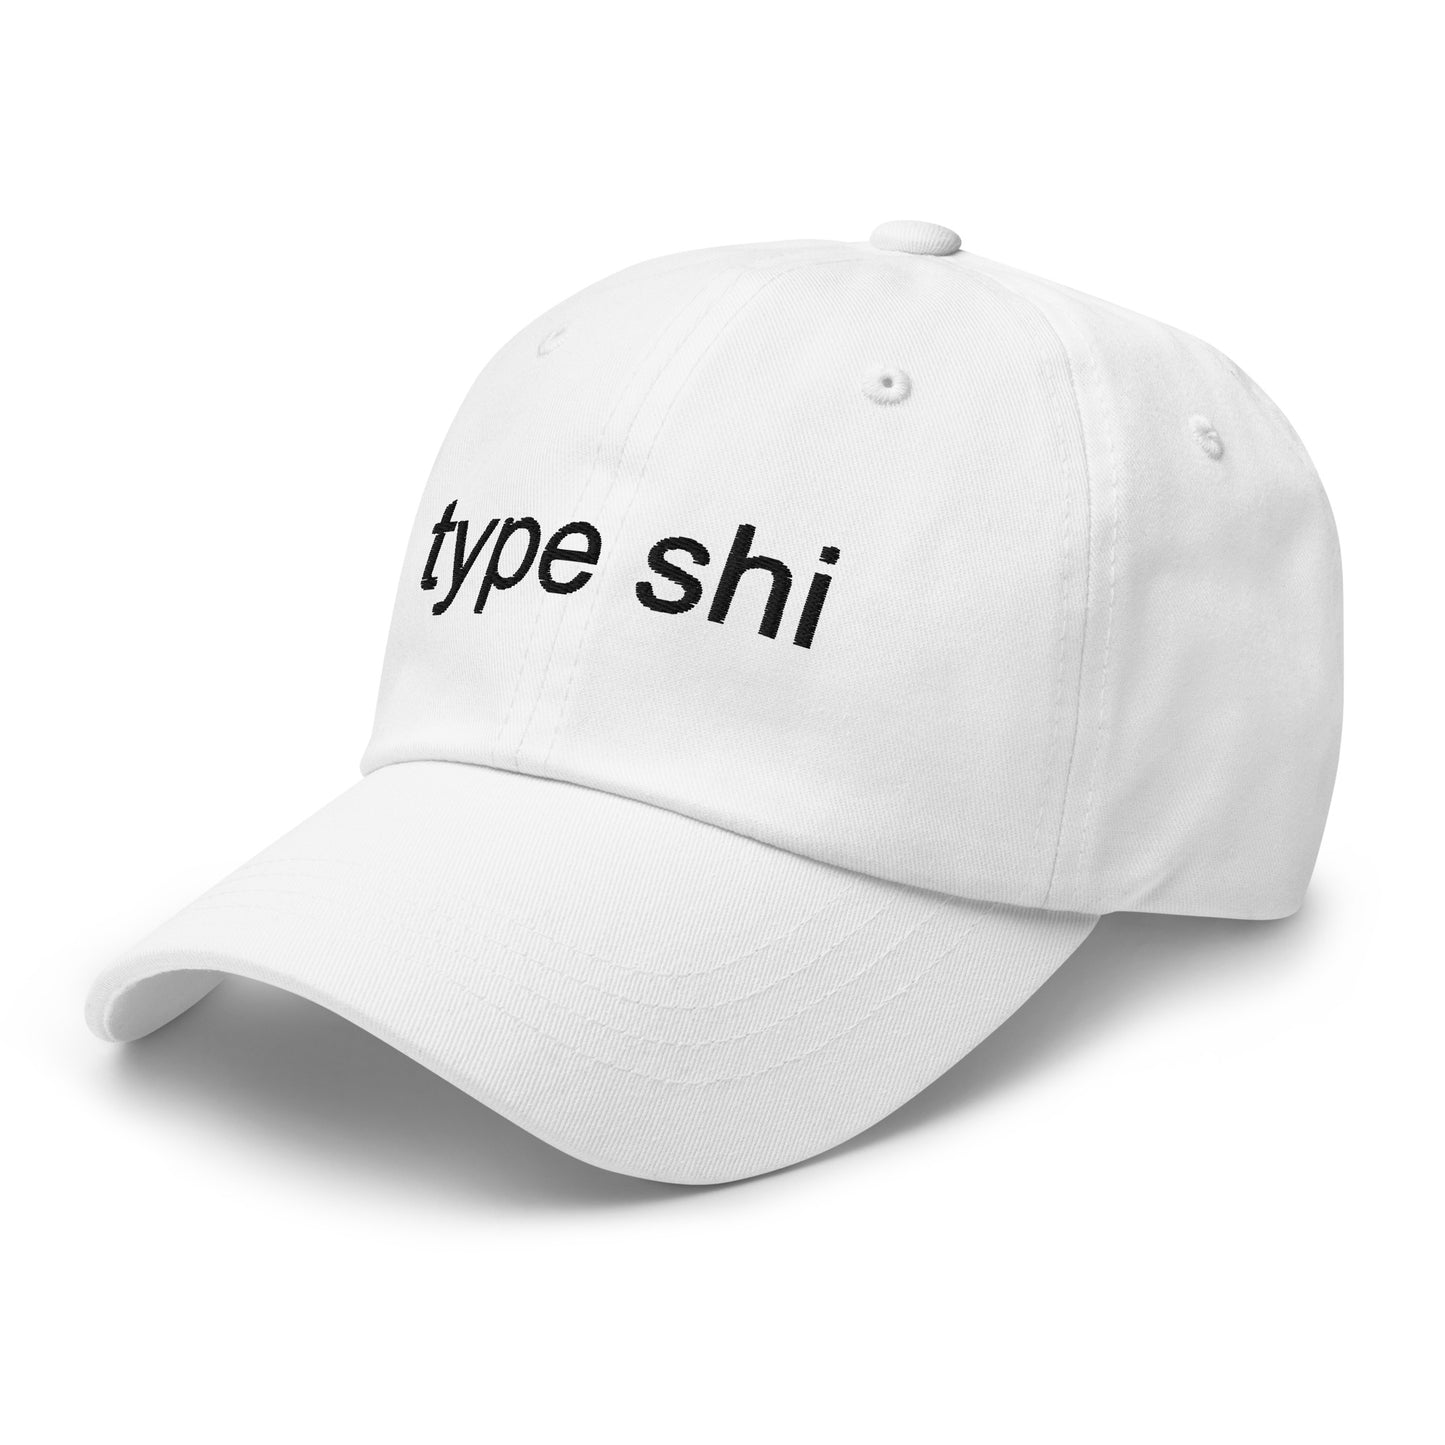 “type shi” hat